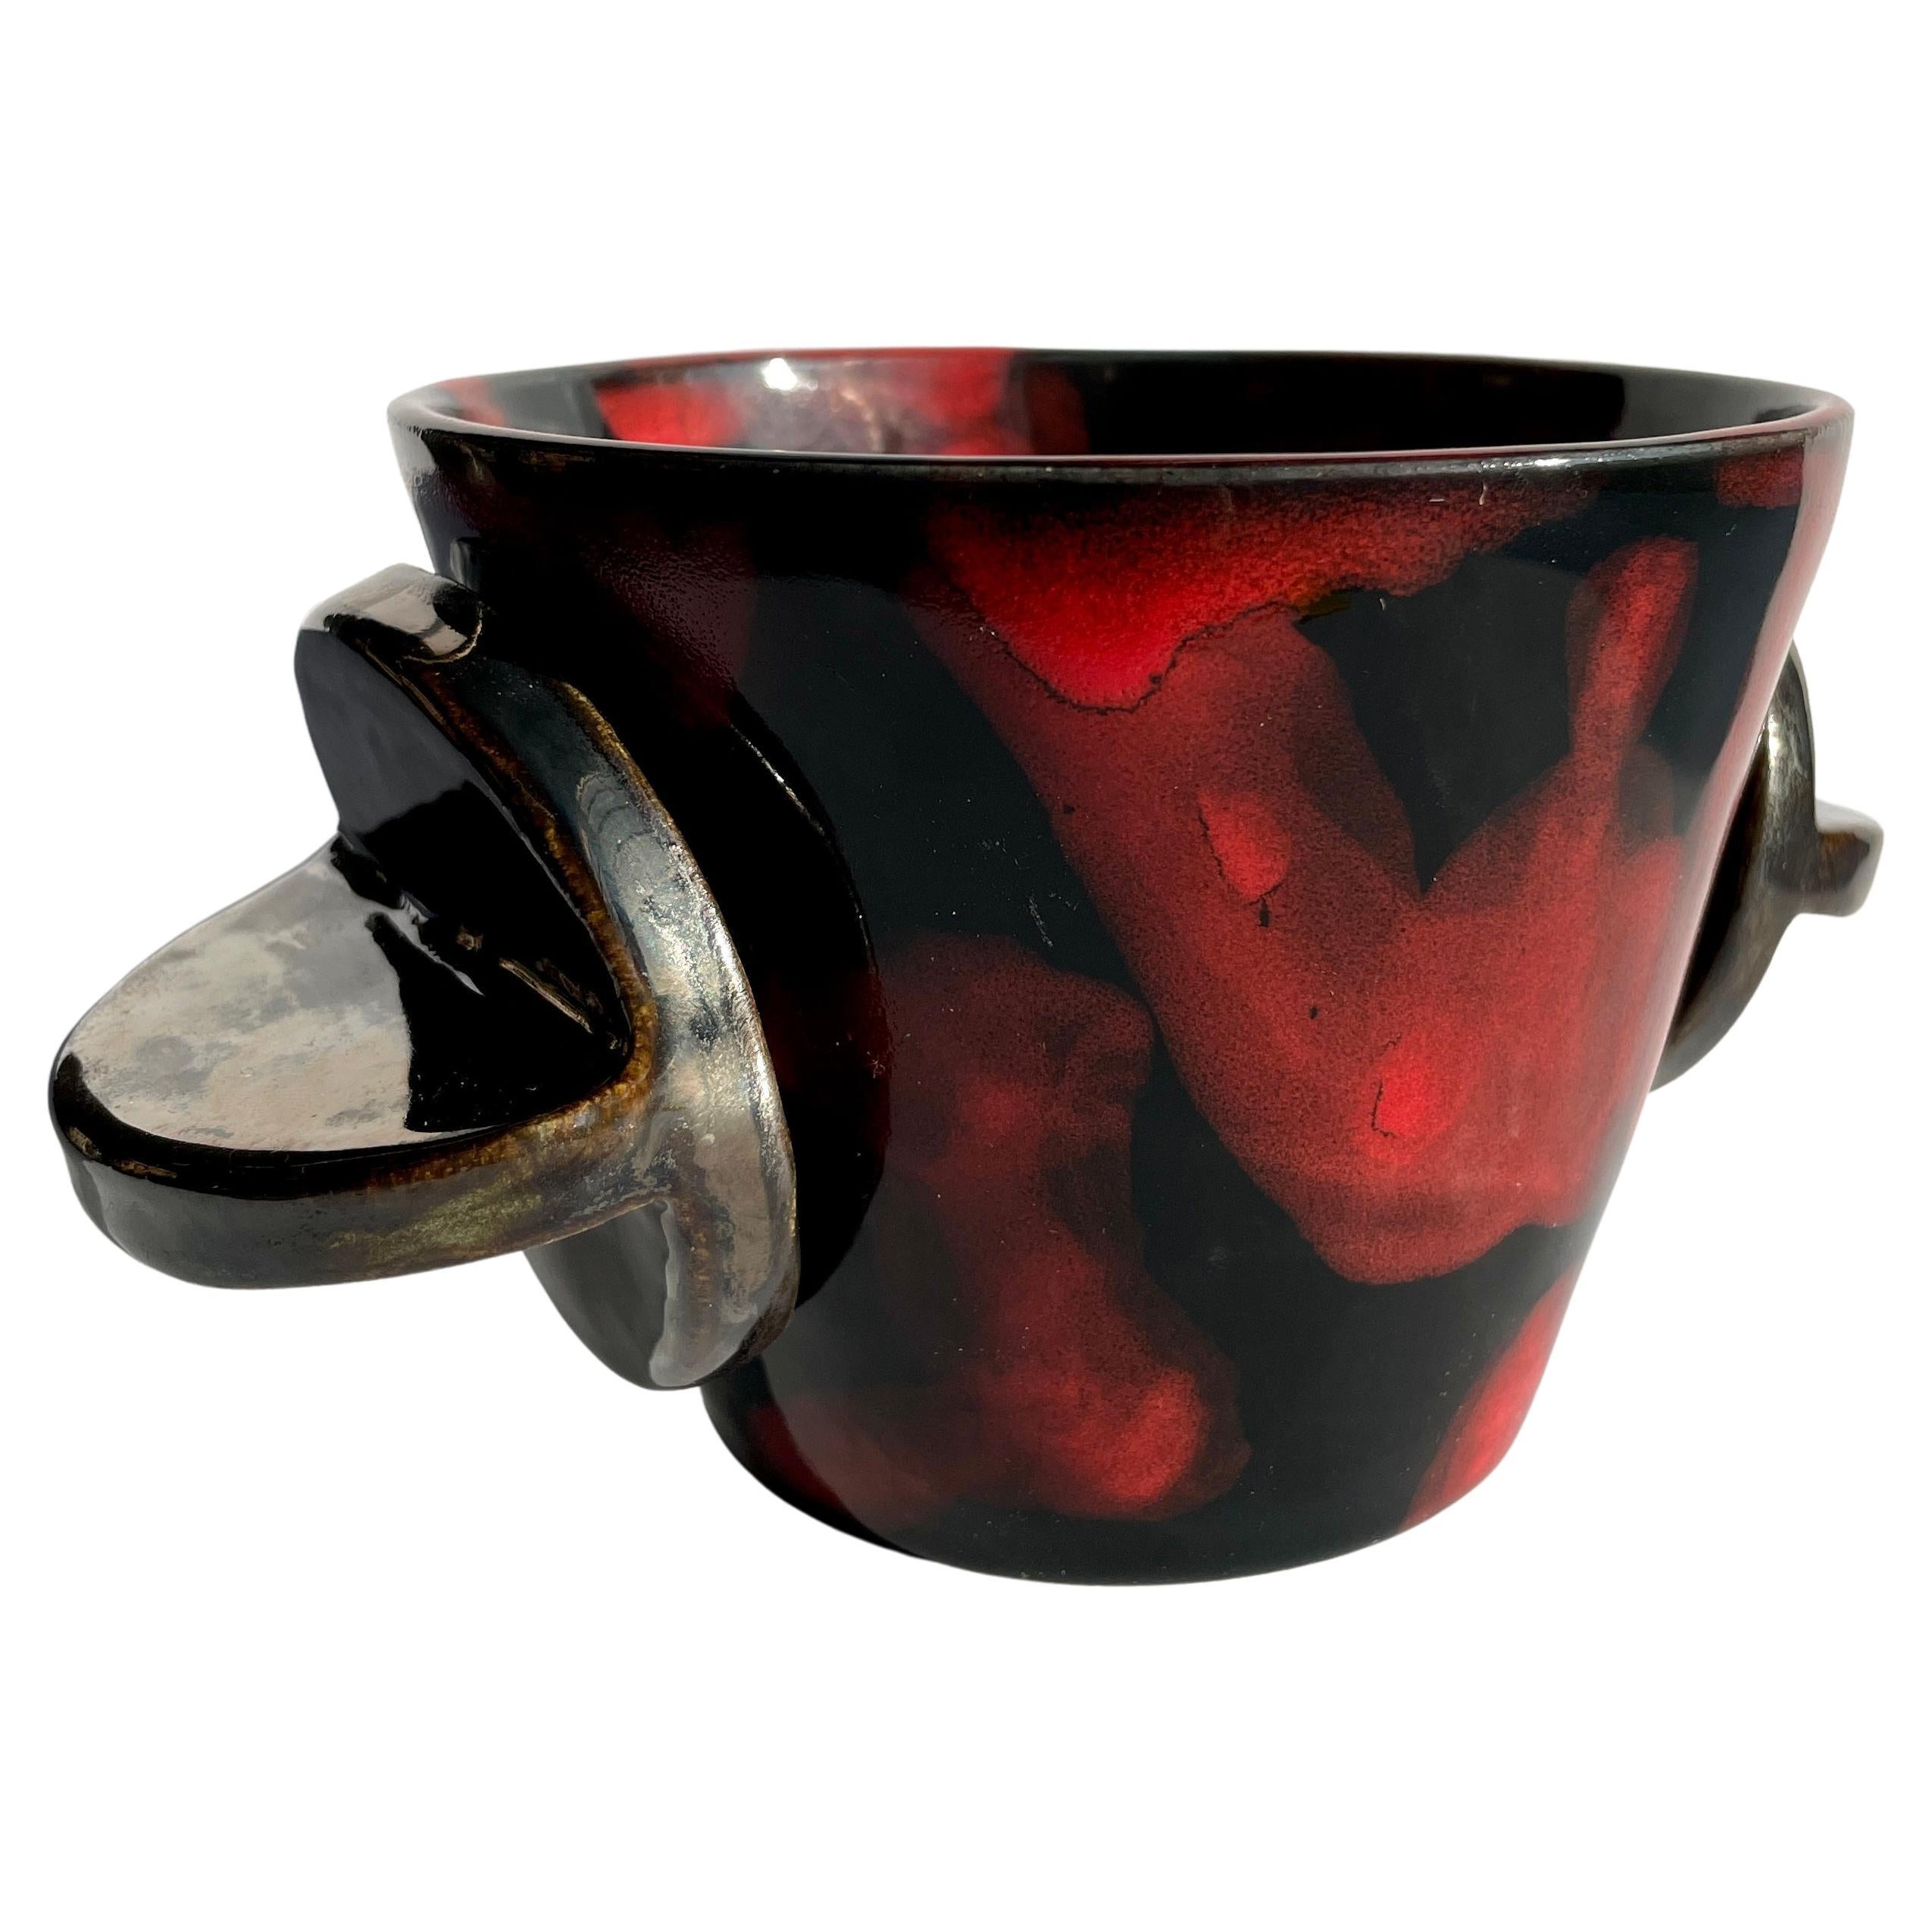 Le Tab V, présenté ici en China Red / Raven diffus et en argent cassé, est un récipient sûr pour votre boisson préférée, pour vos réceptions ou comme objet décoratif ou d'art. Polyvalent, durable et unique en son genre, il est fabriqué à partir de